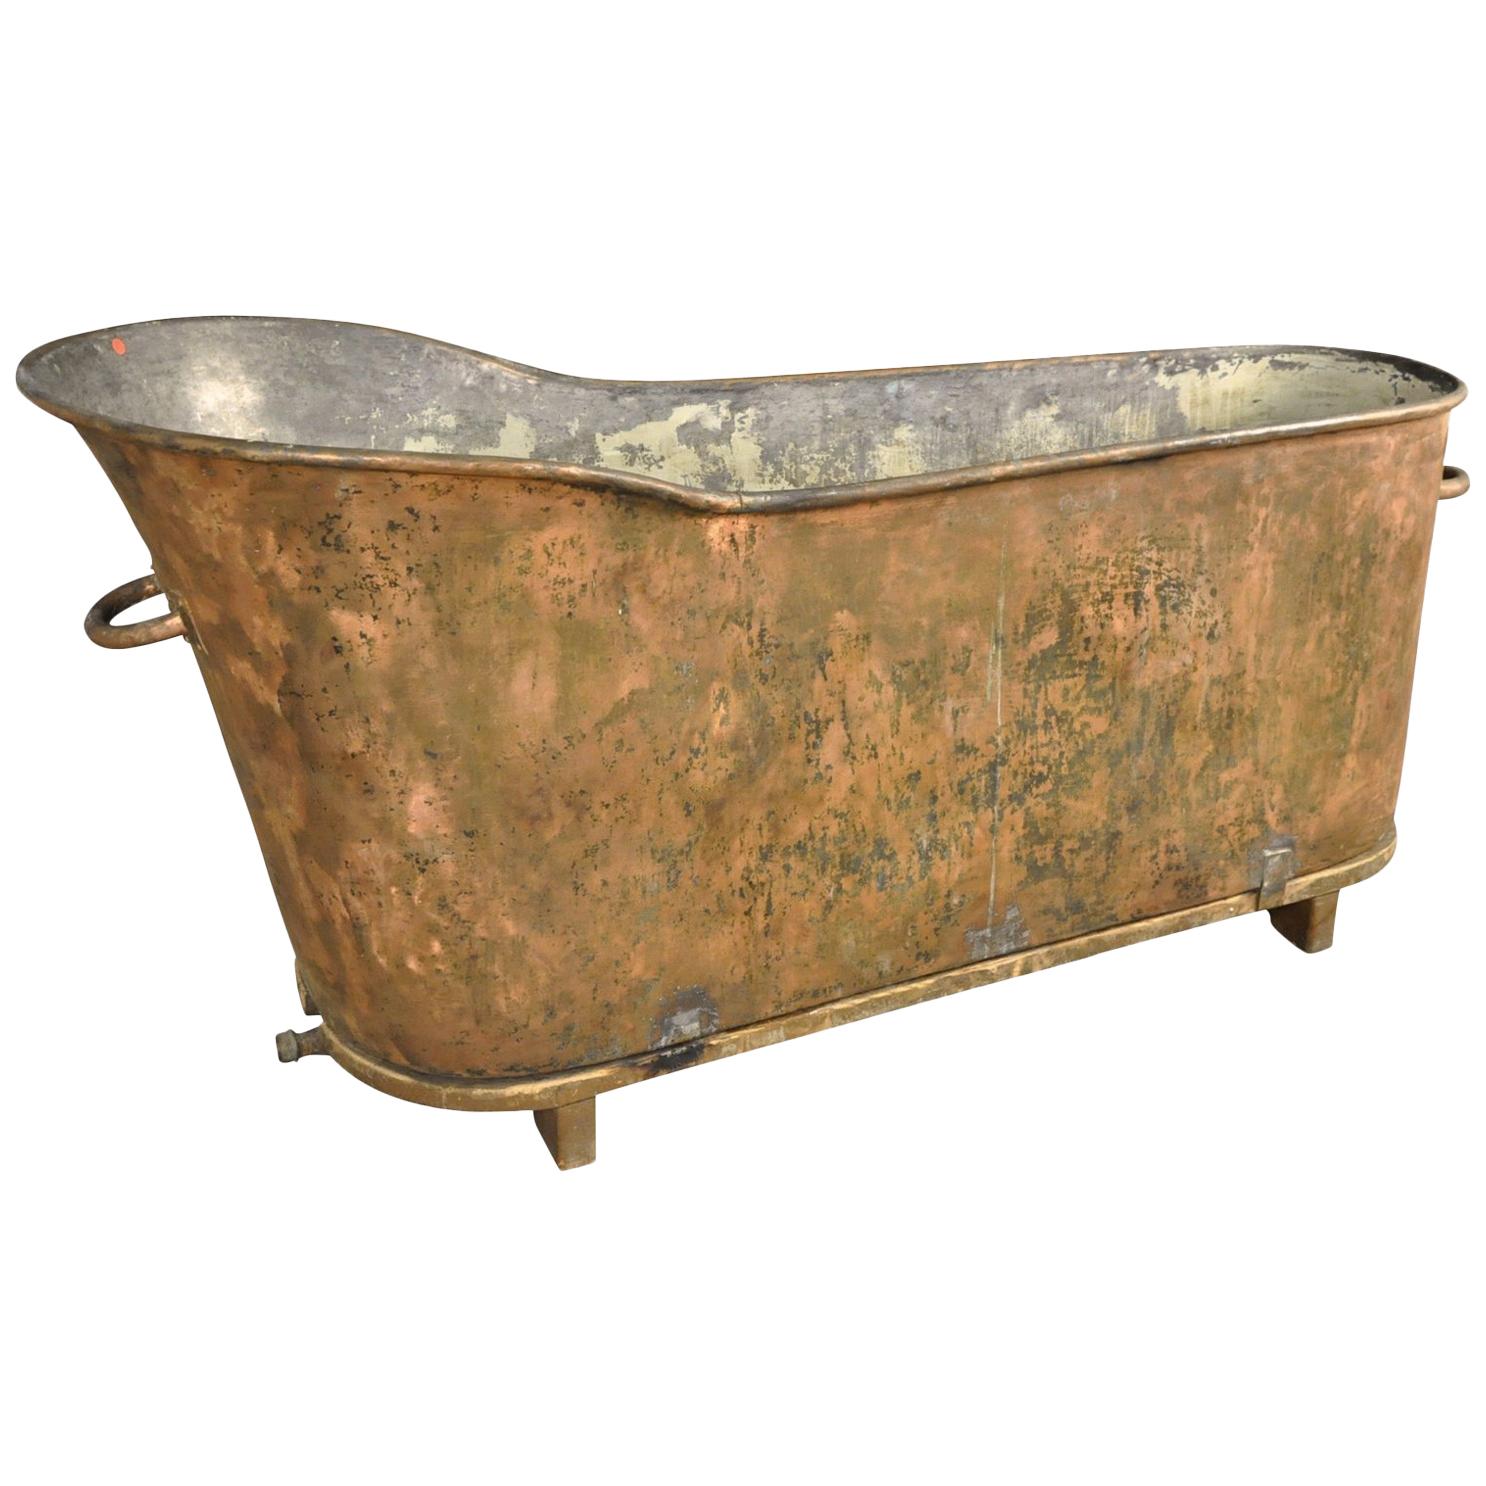 French 19th Century Copper Bathtub